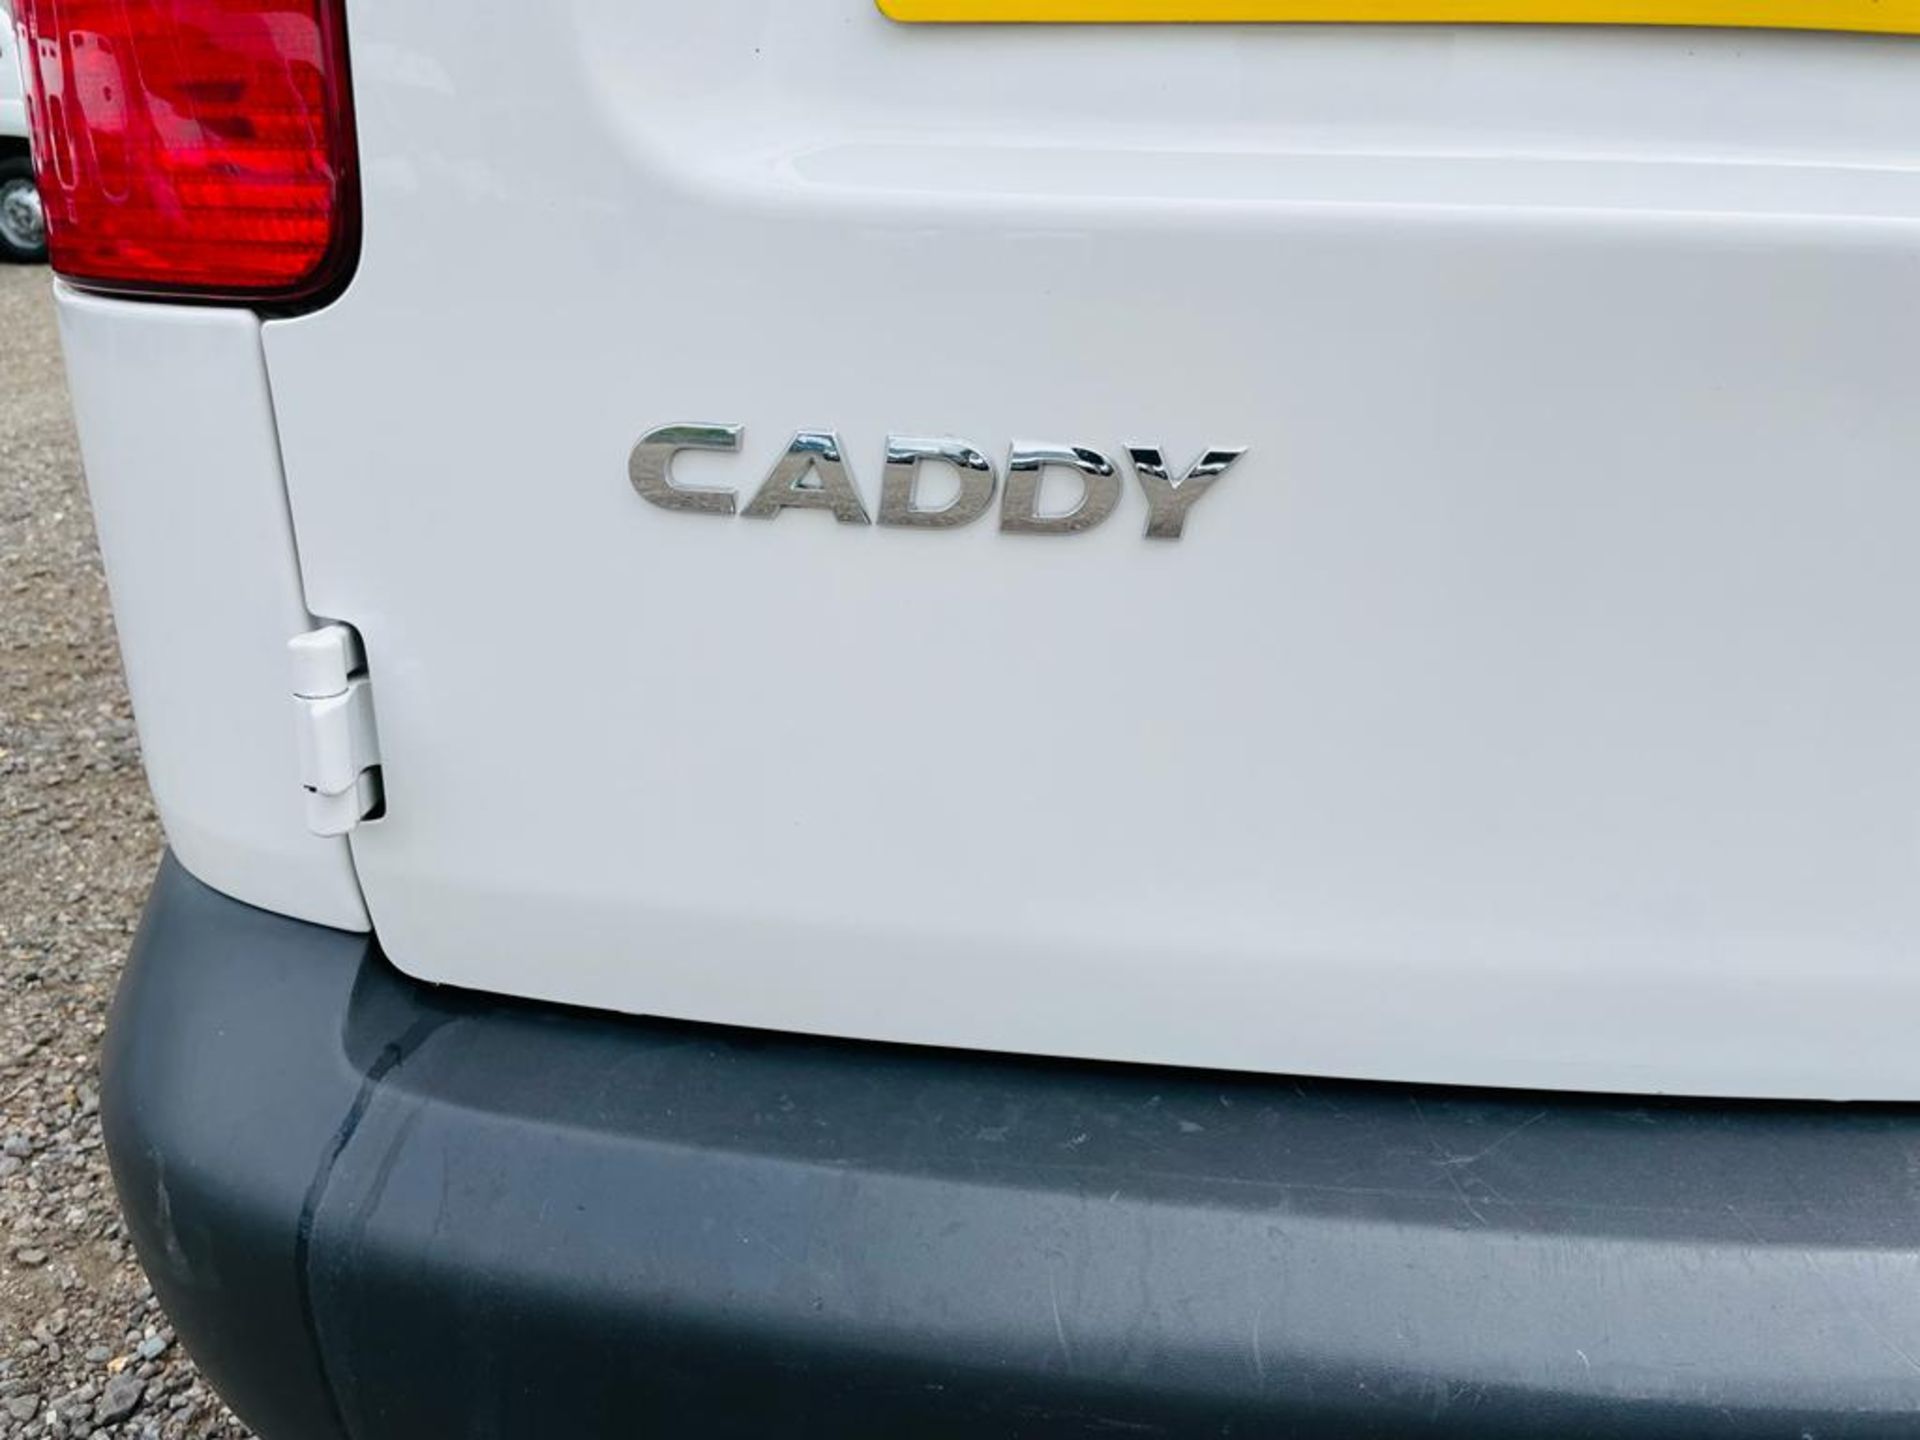 ** ON SALE ** Volkswagen Caddy C20 1.6 TDI StartLine 102 2015 '15 Reg' Panel Van - Very Economical - Image 14 of 27